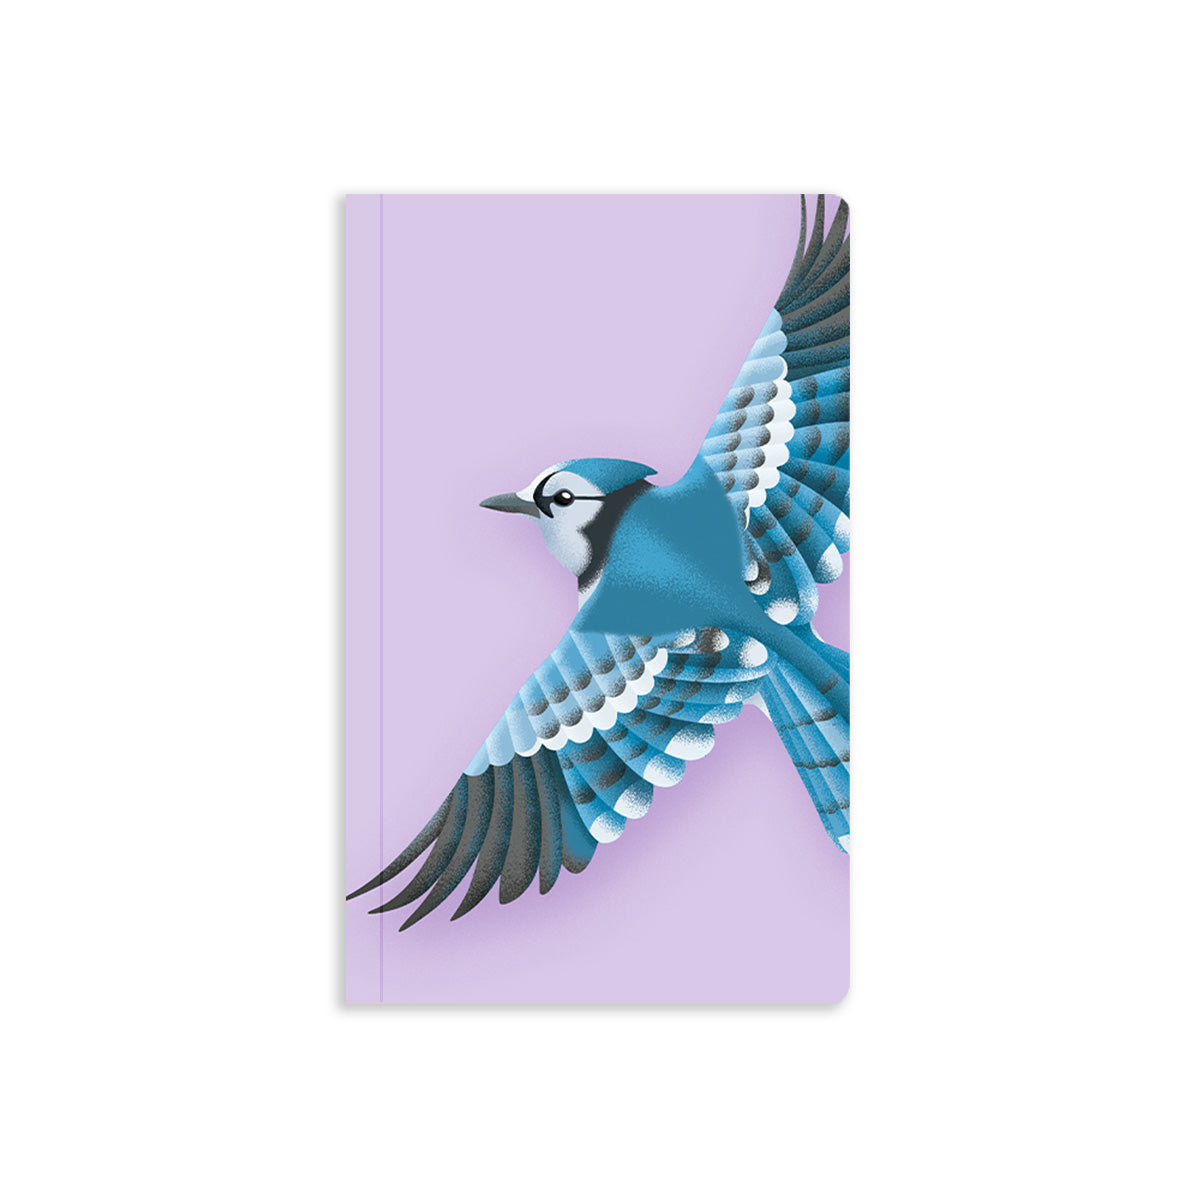 Illustrated blue jay mid-flight on a purple background